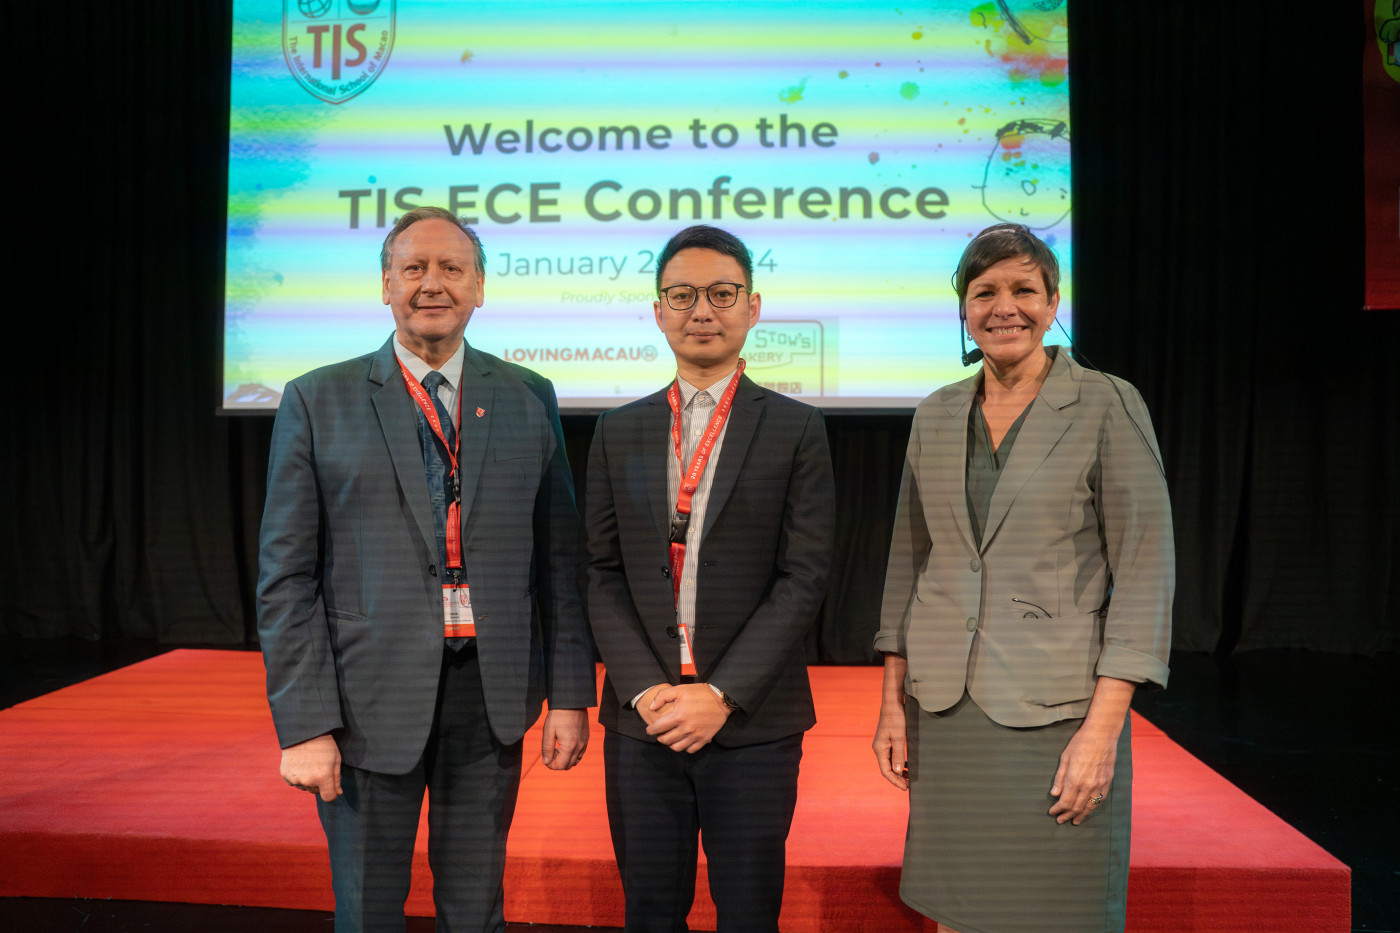 TIS-ECE-Conference-0.jpg